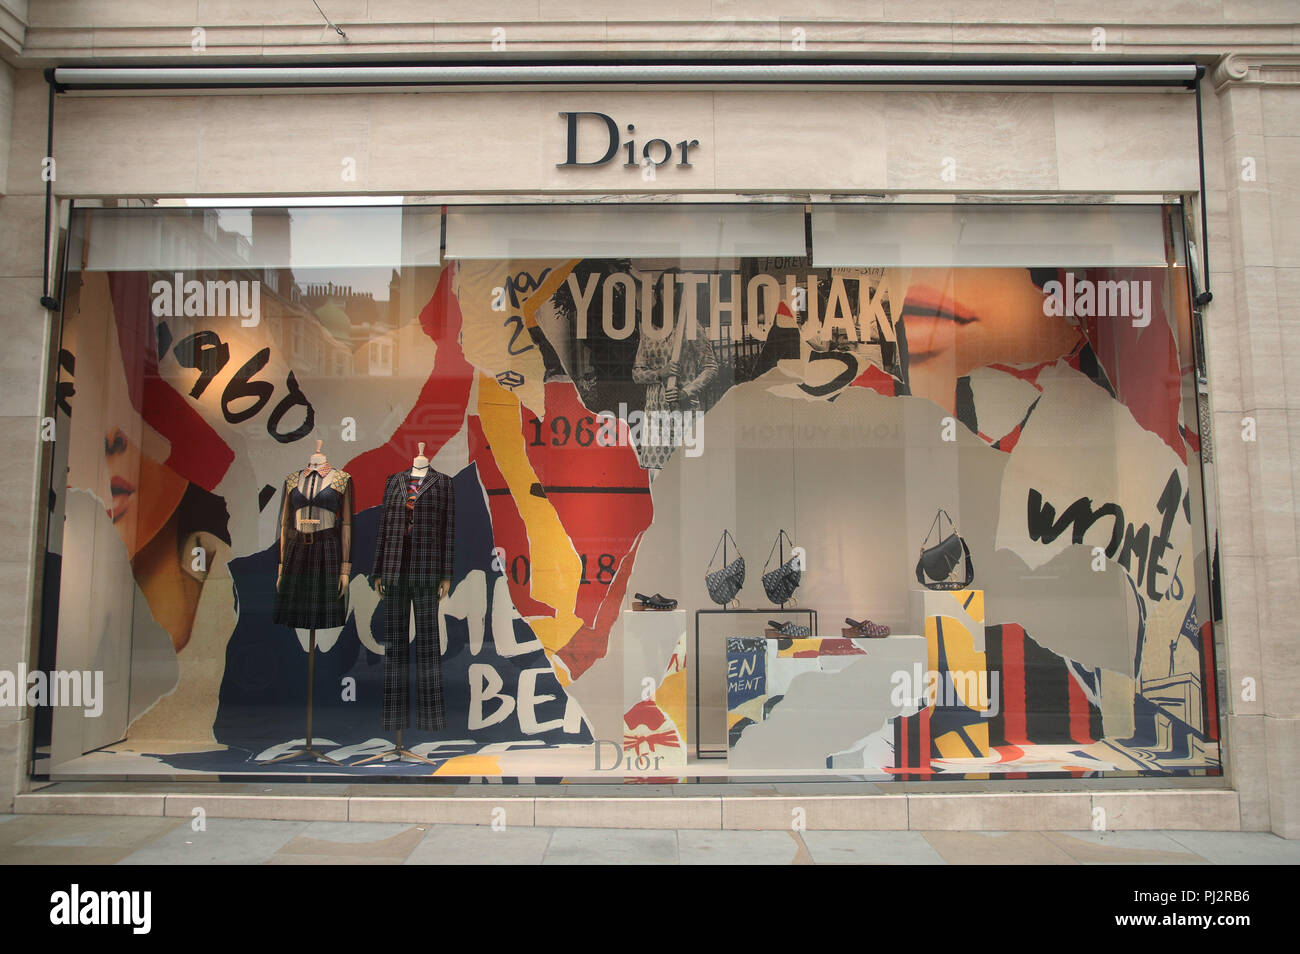 Die Dior Store auf New Bond Street, London. PRESS ASSOCIATION Foto. Bild Datum: Mittwoch, August 22, 2018. Photo Credit: Yui Mok/PA-Kabel Stockfoto